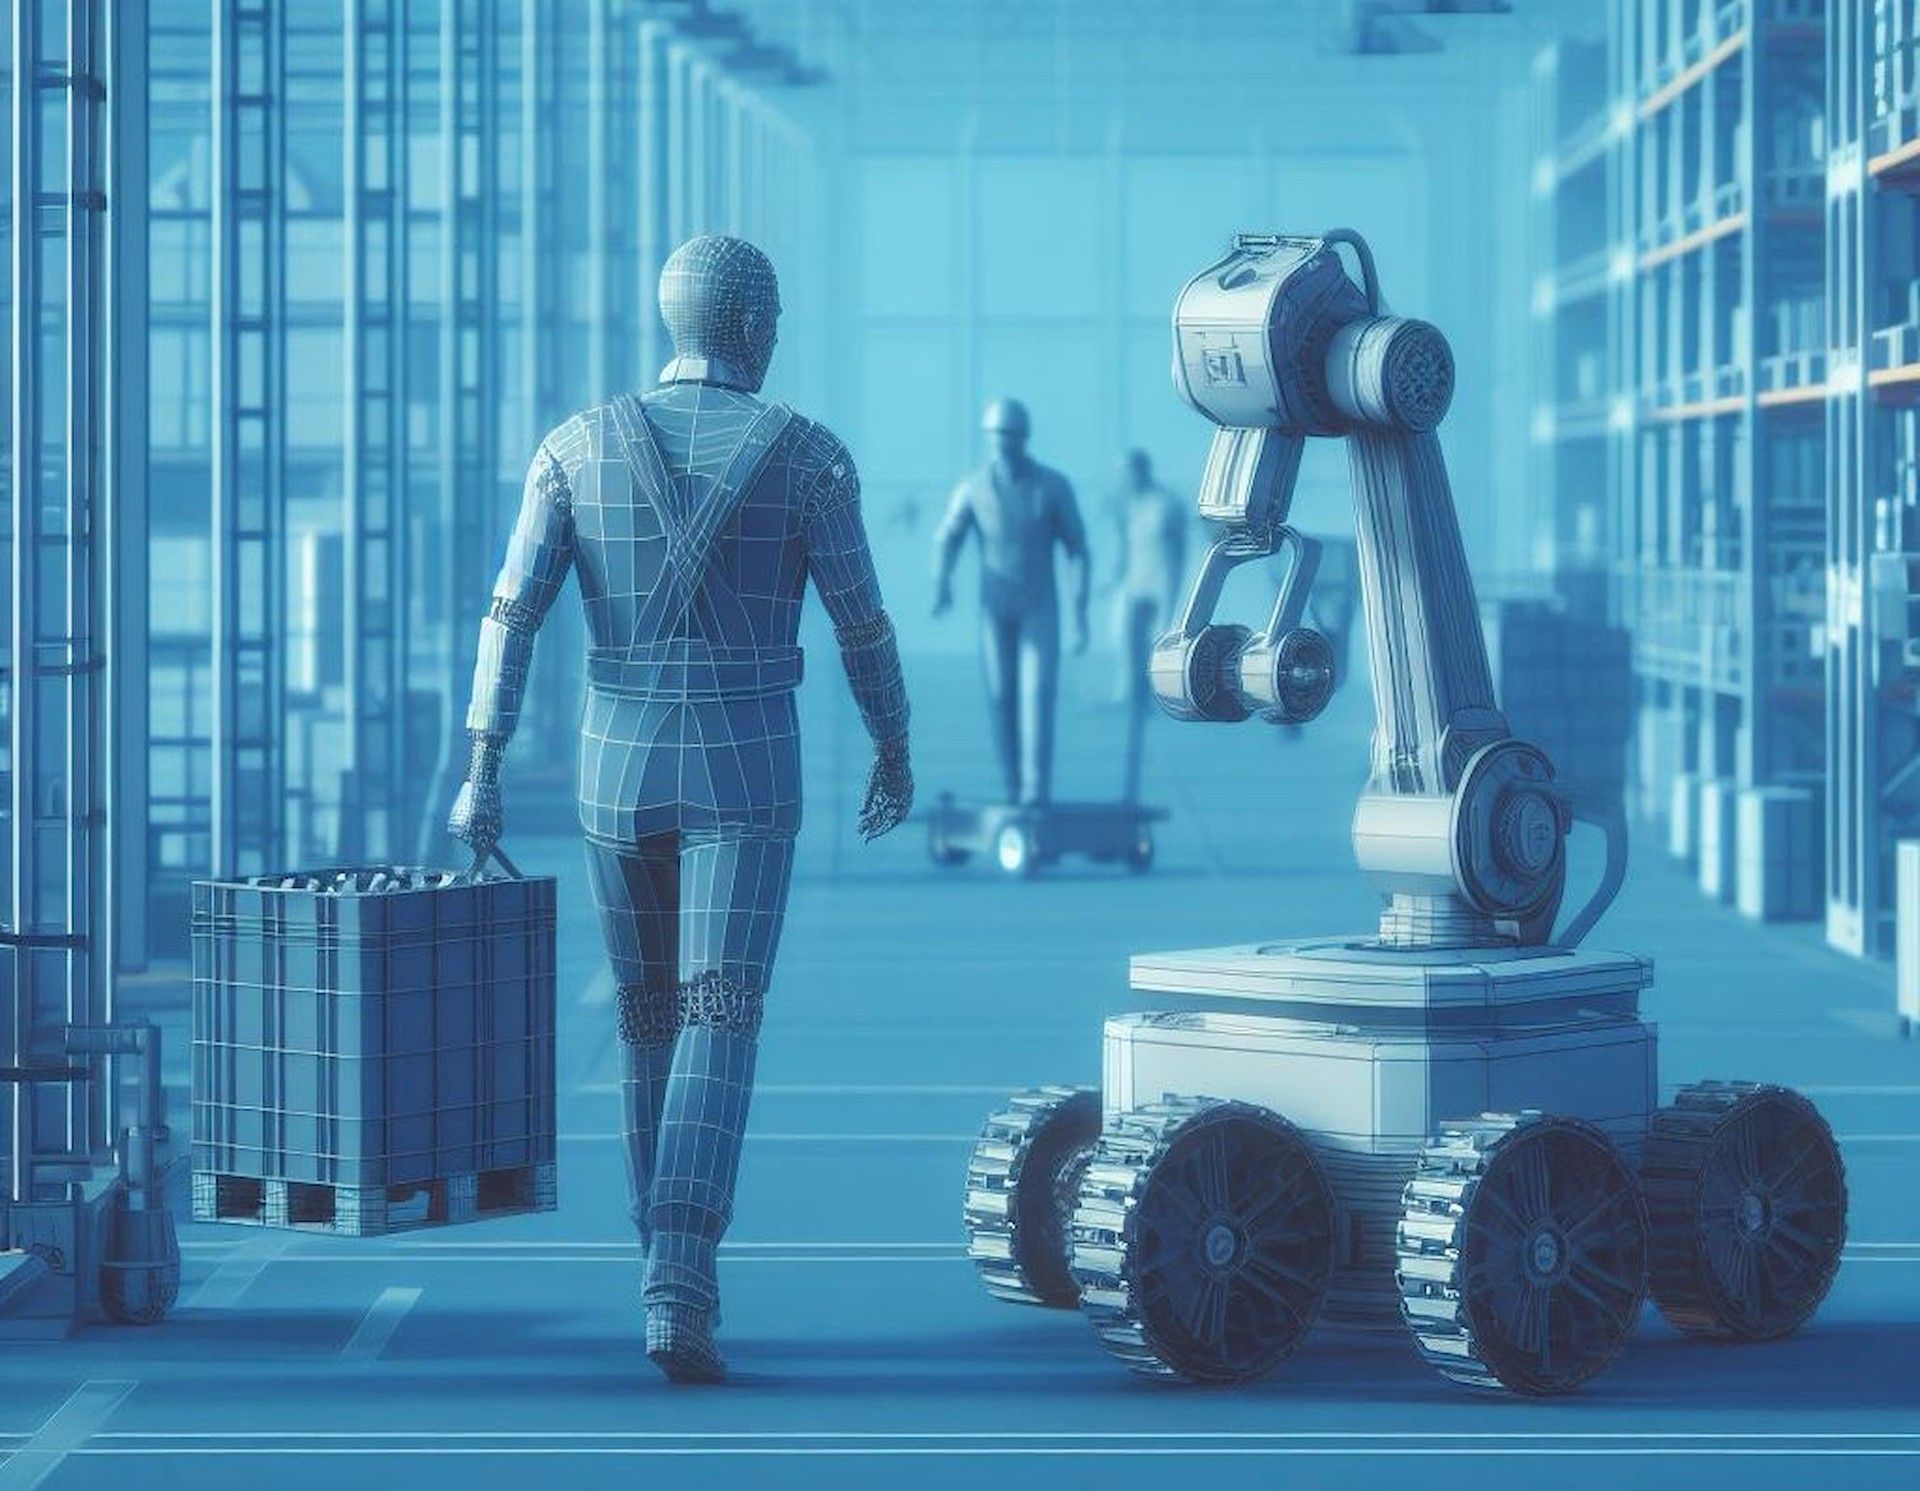 Are autonomous mobile robots the next industrial revolution?